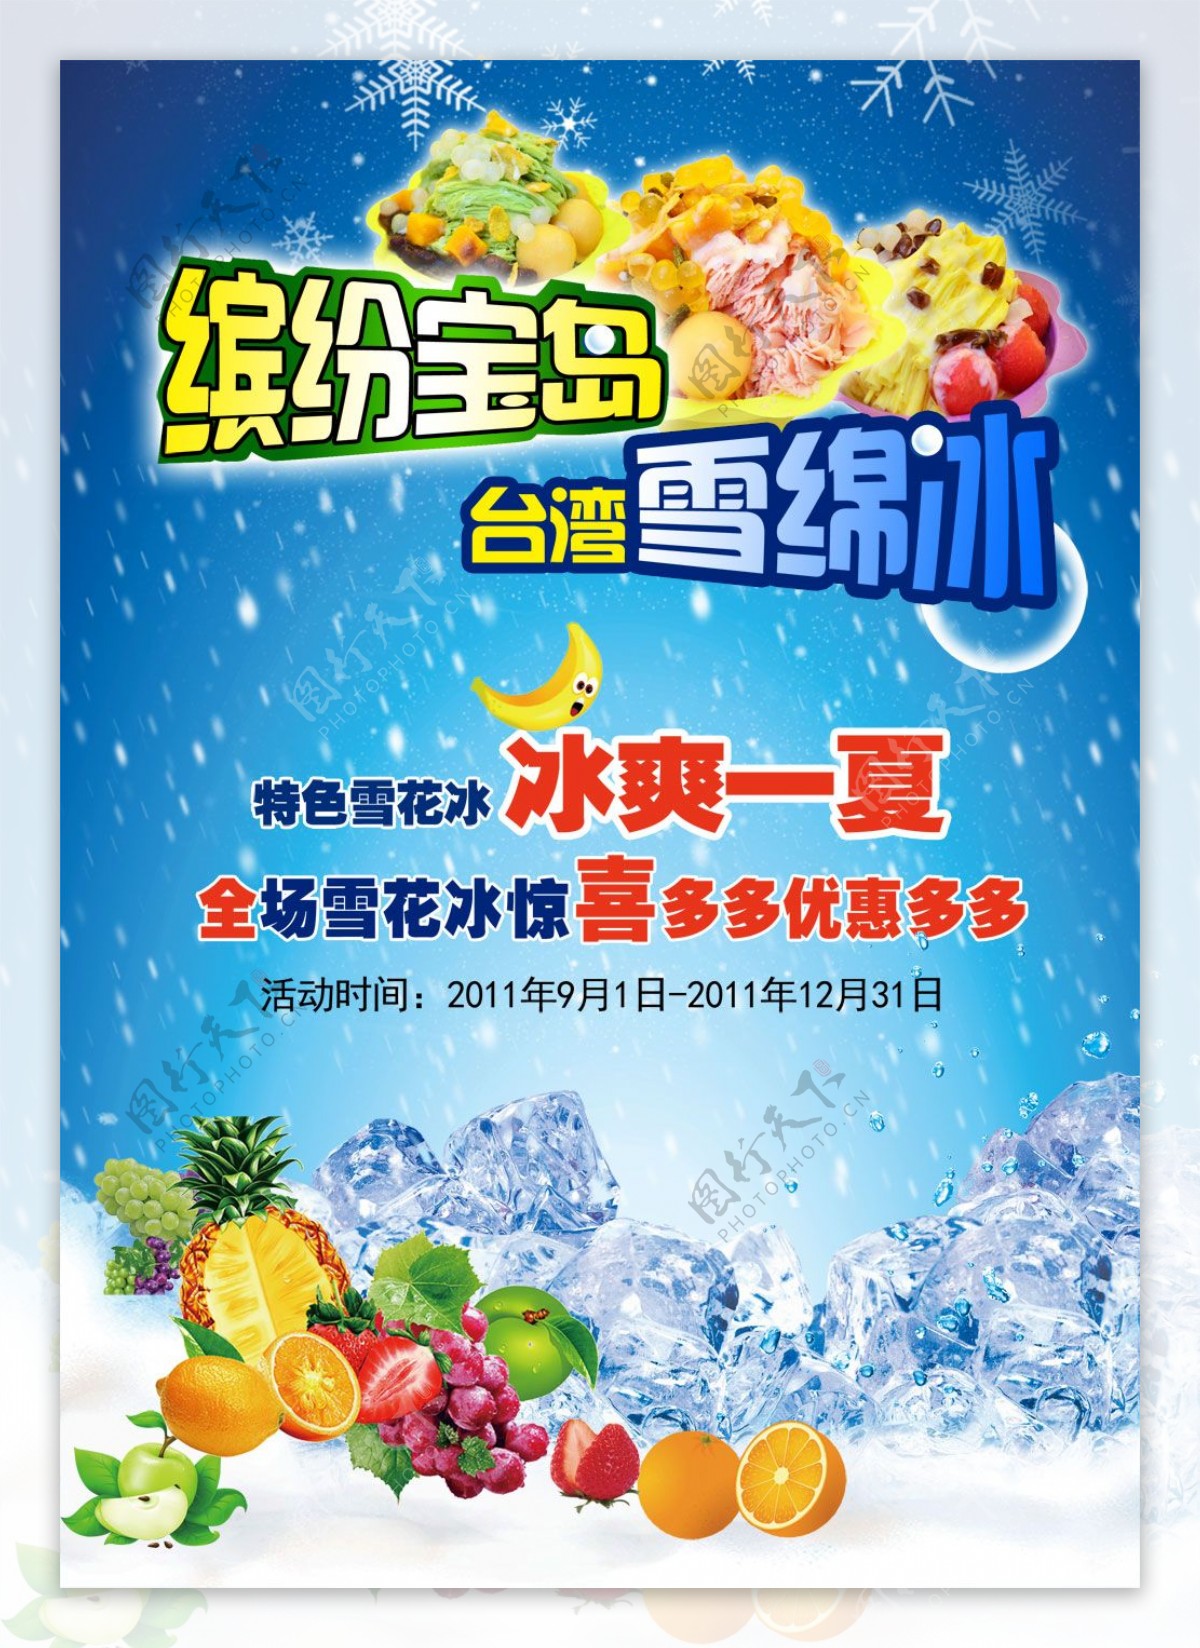 宝岛台湾冰淇淋